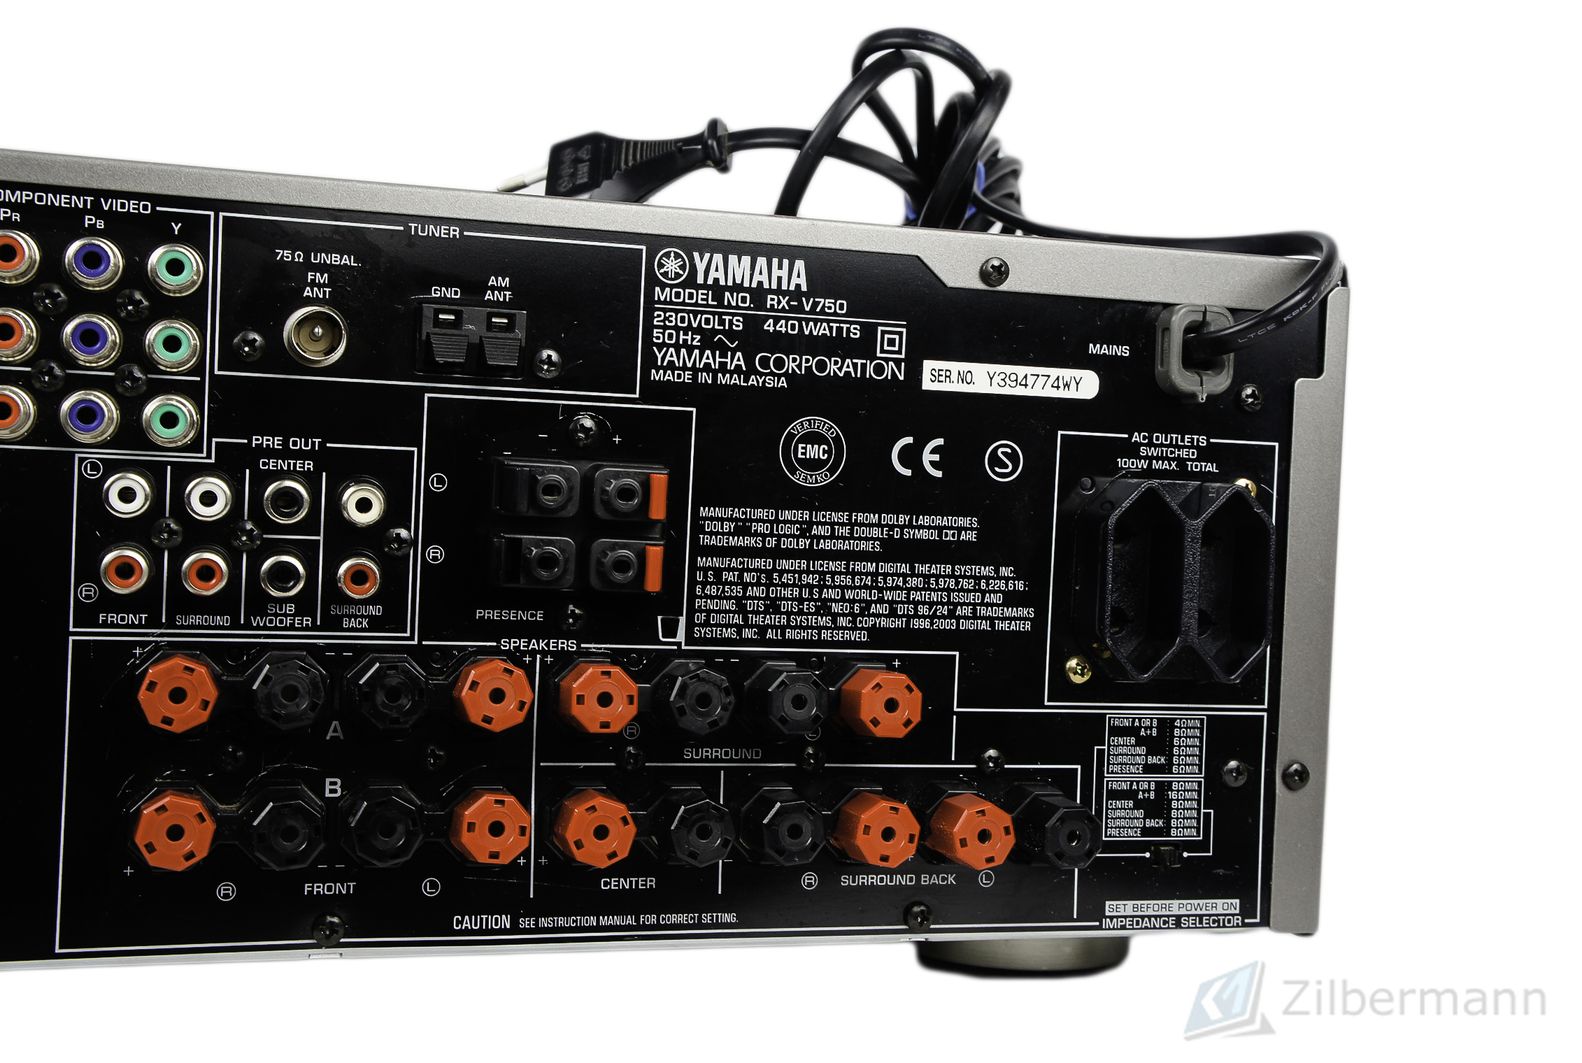 Yamaha_RX-V750_7.1_AV_Receiver_Natural_Sound_Silber_05